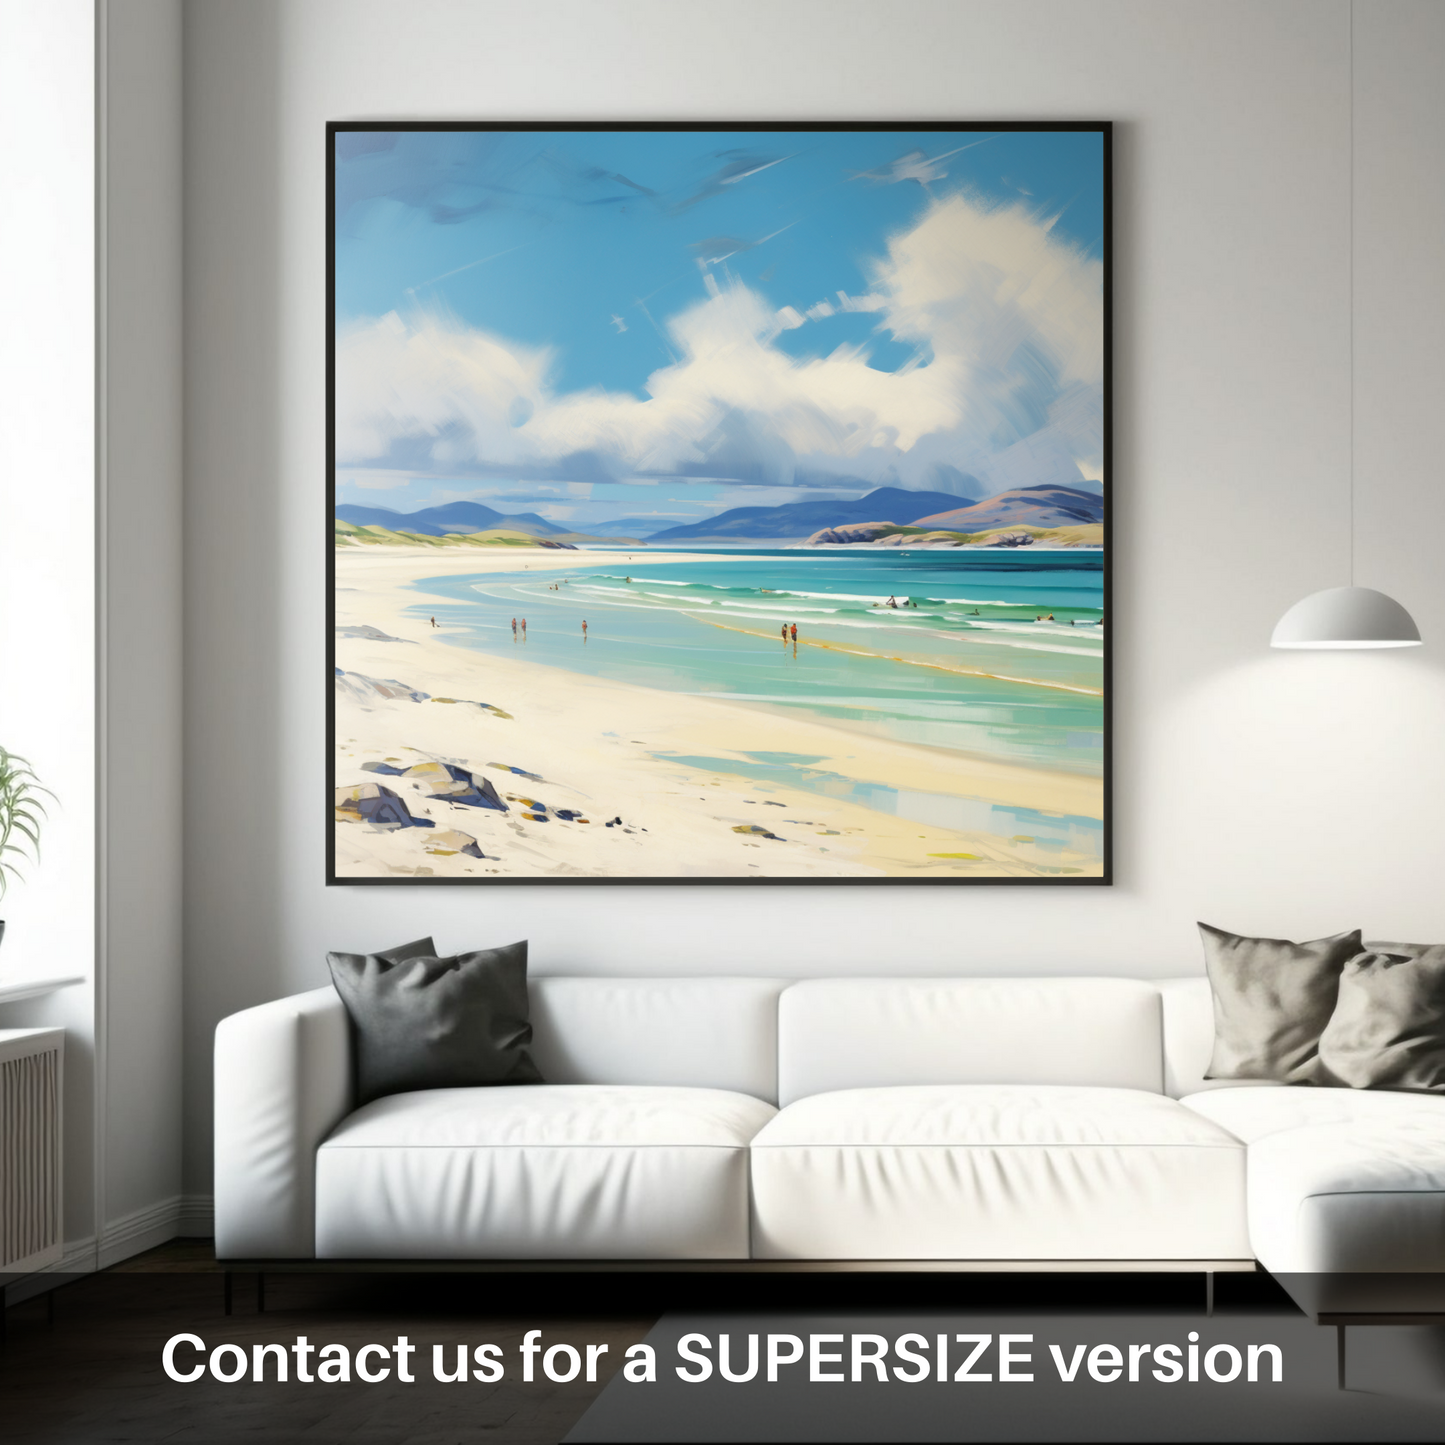 Huge supersize print of Luskentyre Beach, Isle of Harris